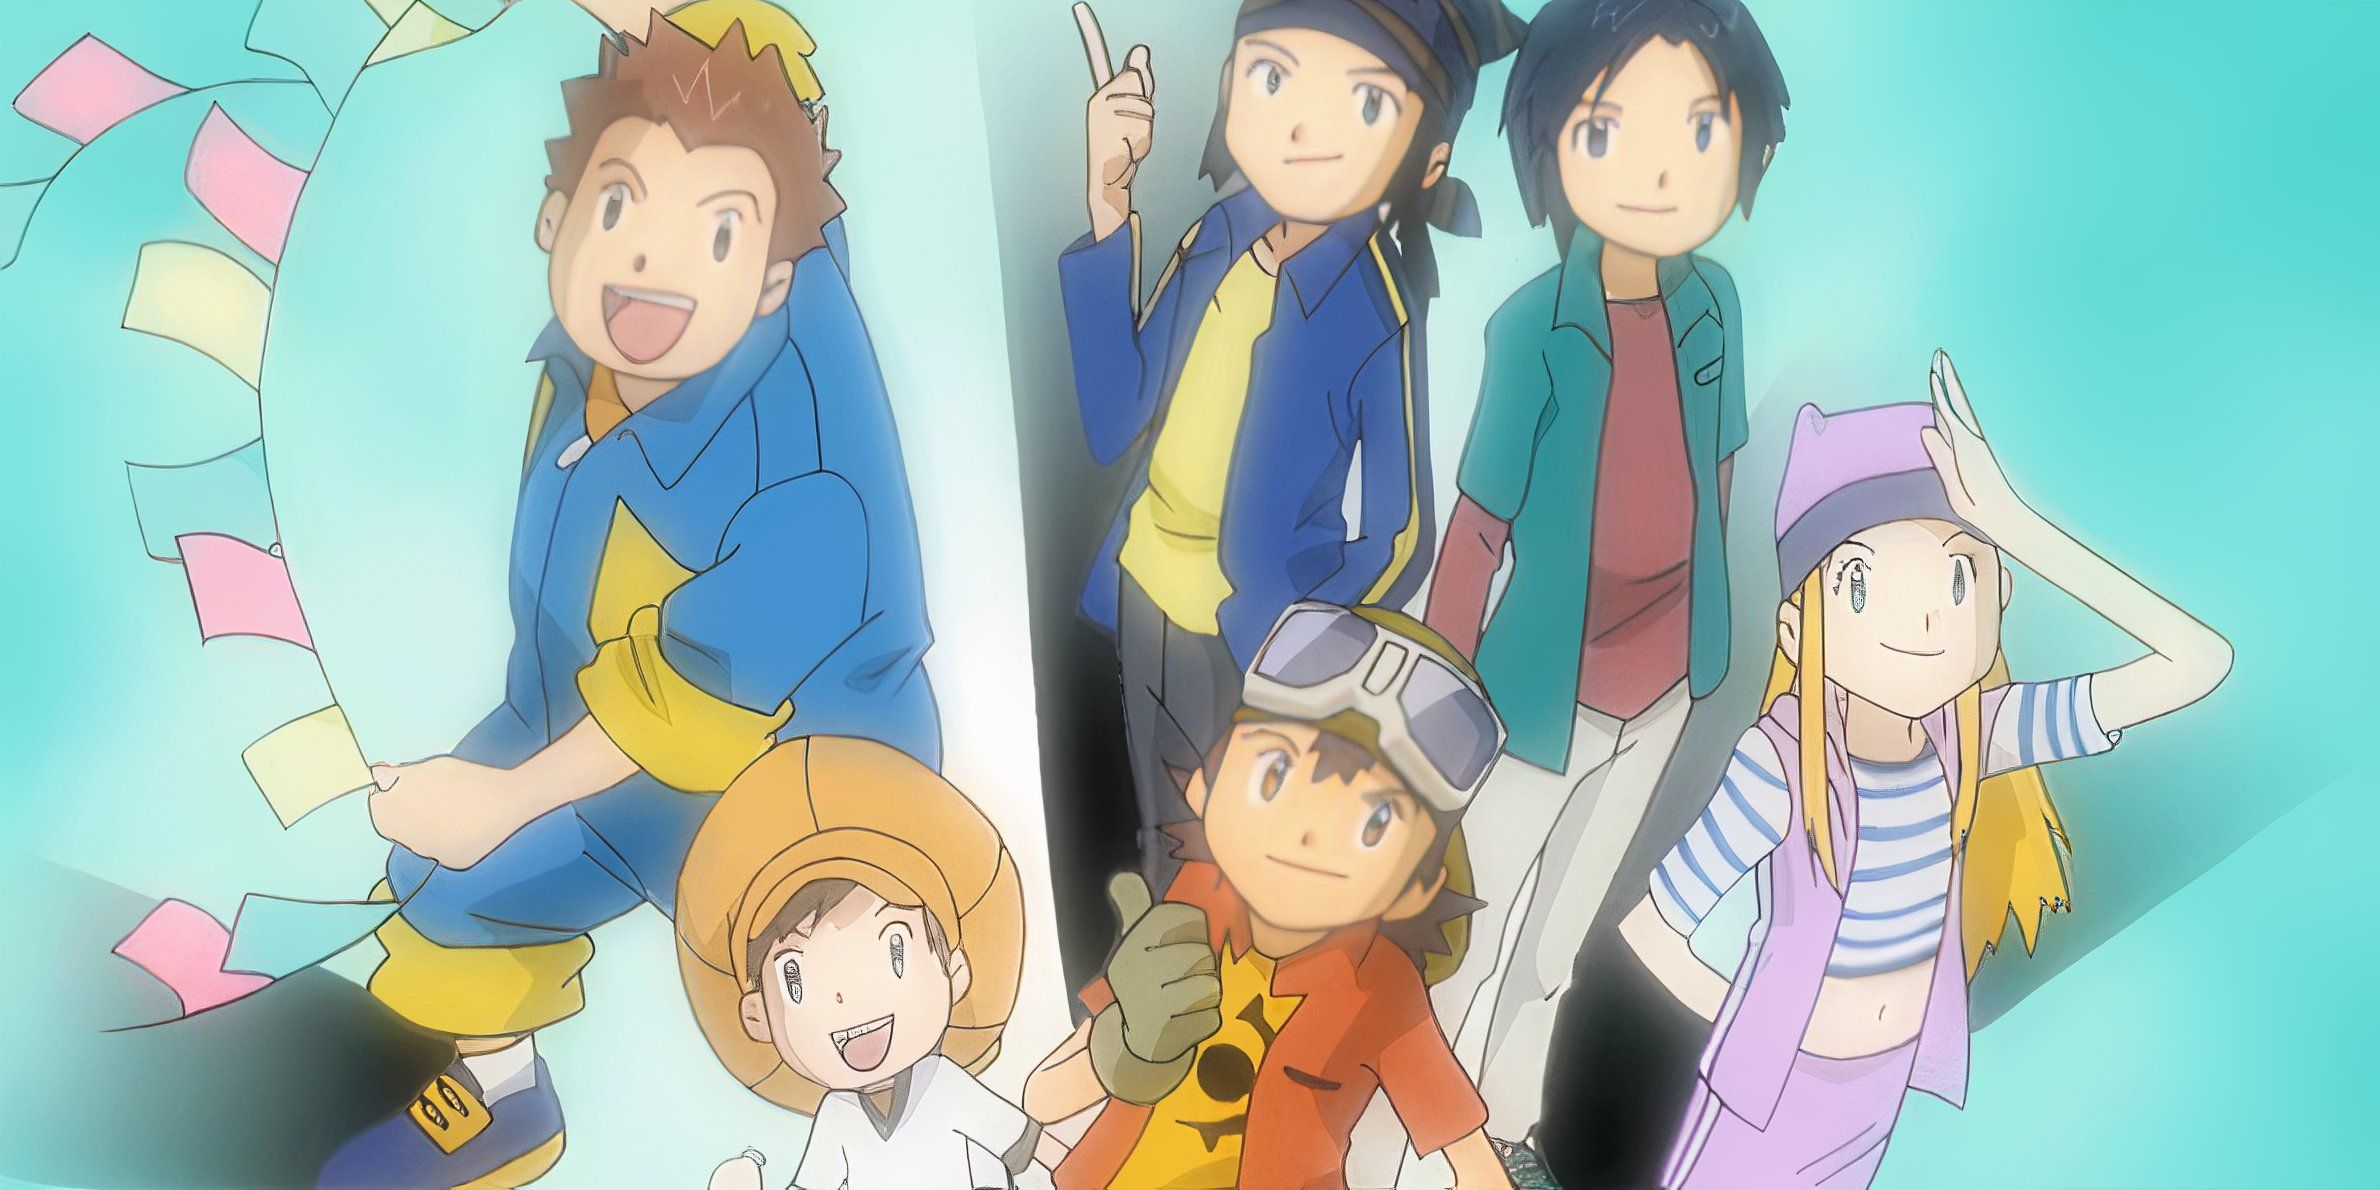 De Digimon Frontier: Takuya, Koji, Koichi, JP, Zoe e Tommy estão juntos com sorrisos em seus rostos.